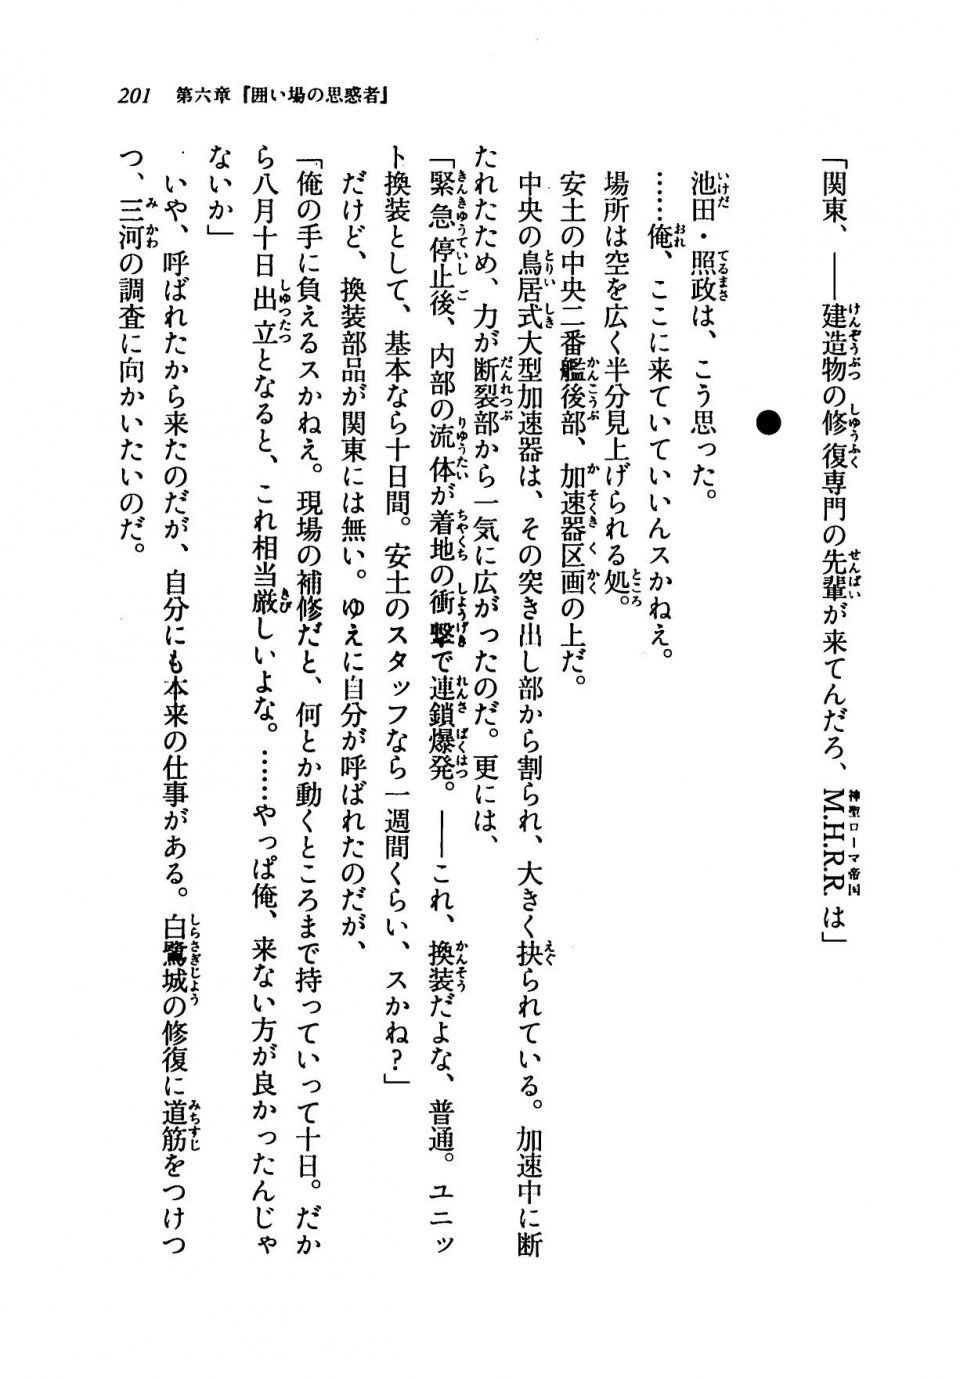 Kyoukai Senjou no Horizon LN Vol 19(8A) - Photo #201